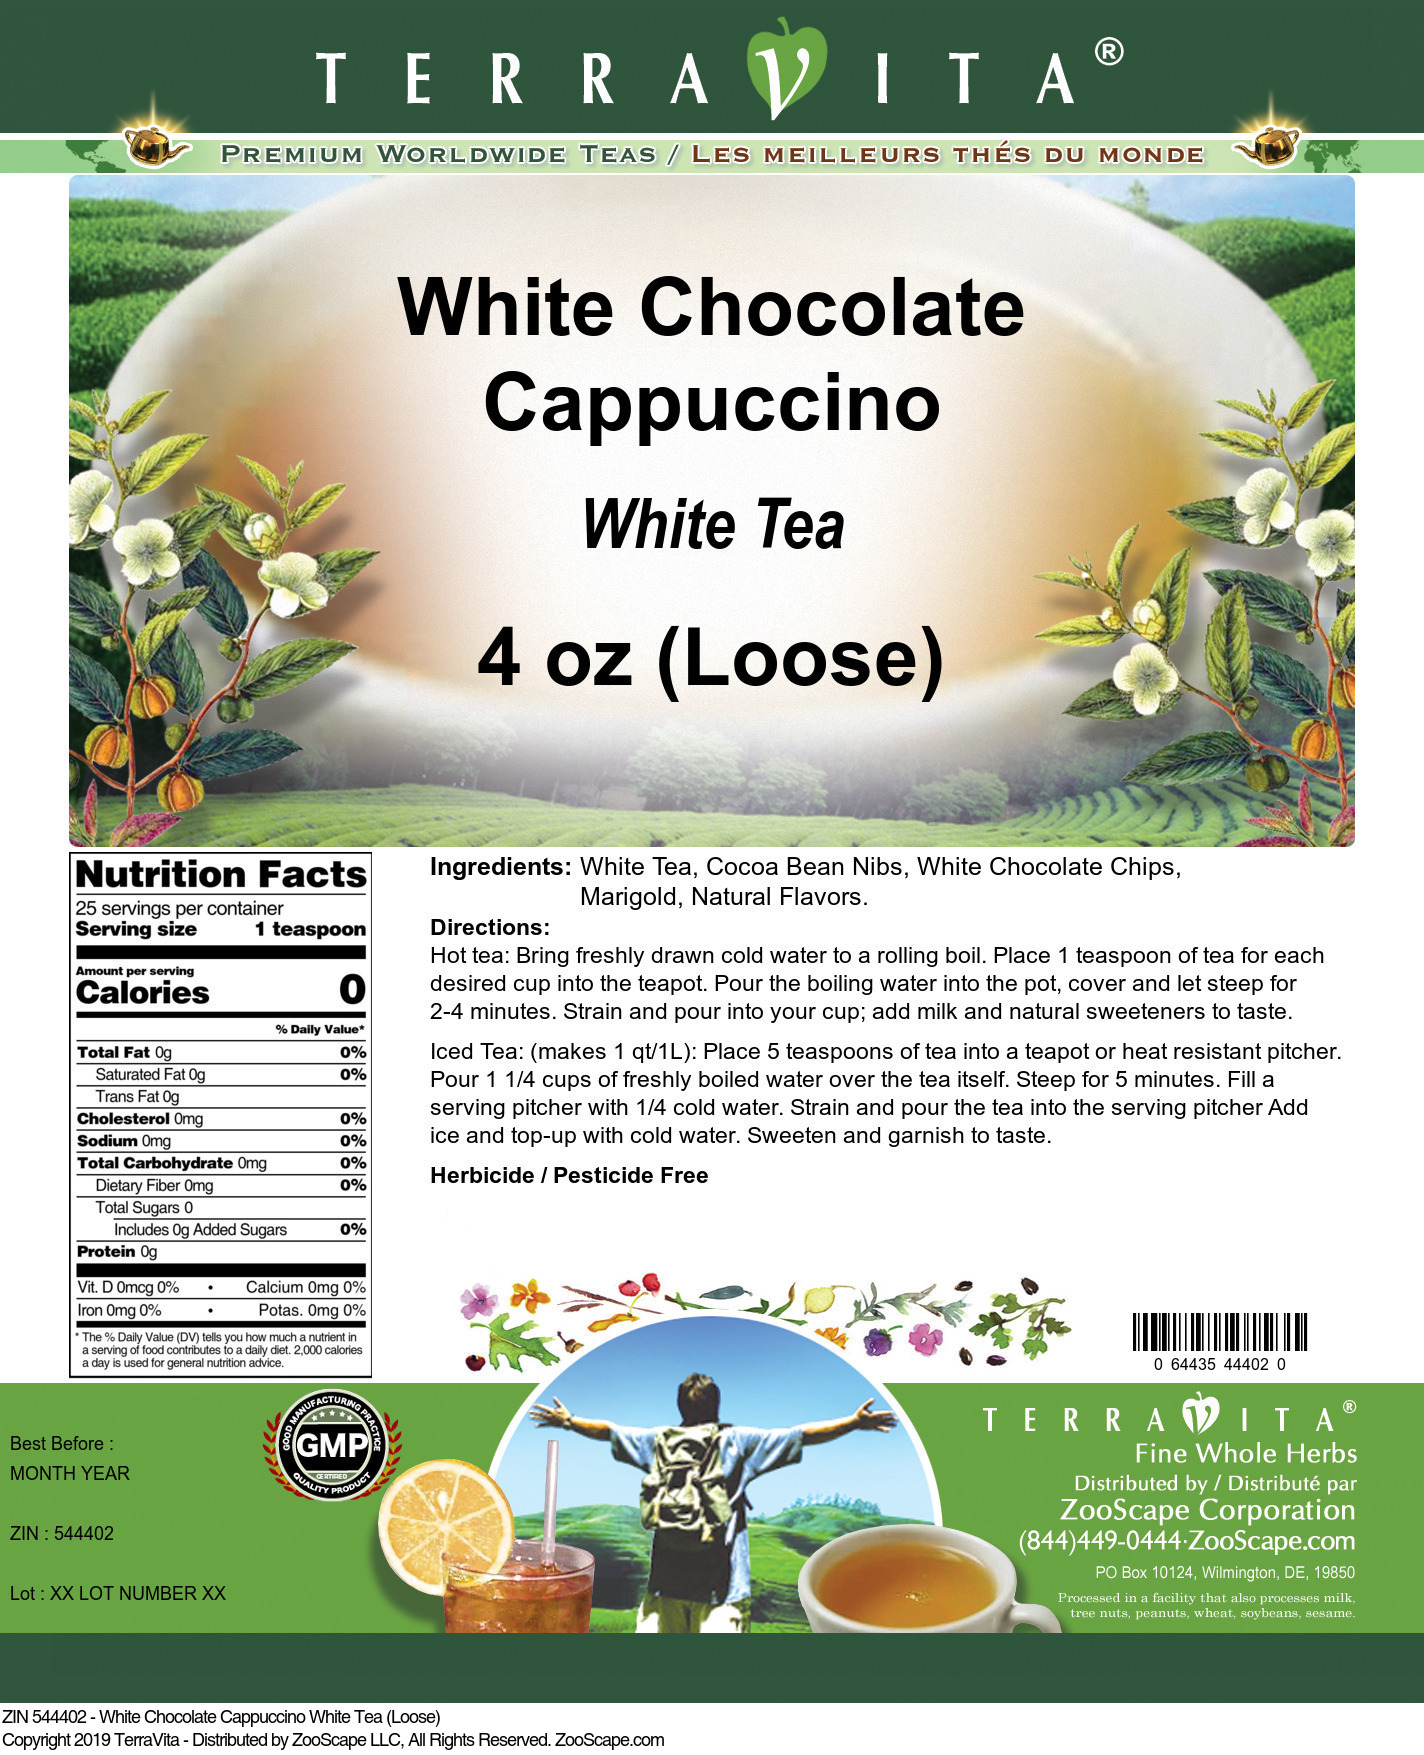 White Chocolate Cappuccino White Tea (Loose) - Label